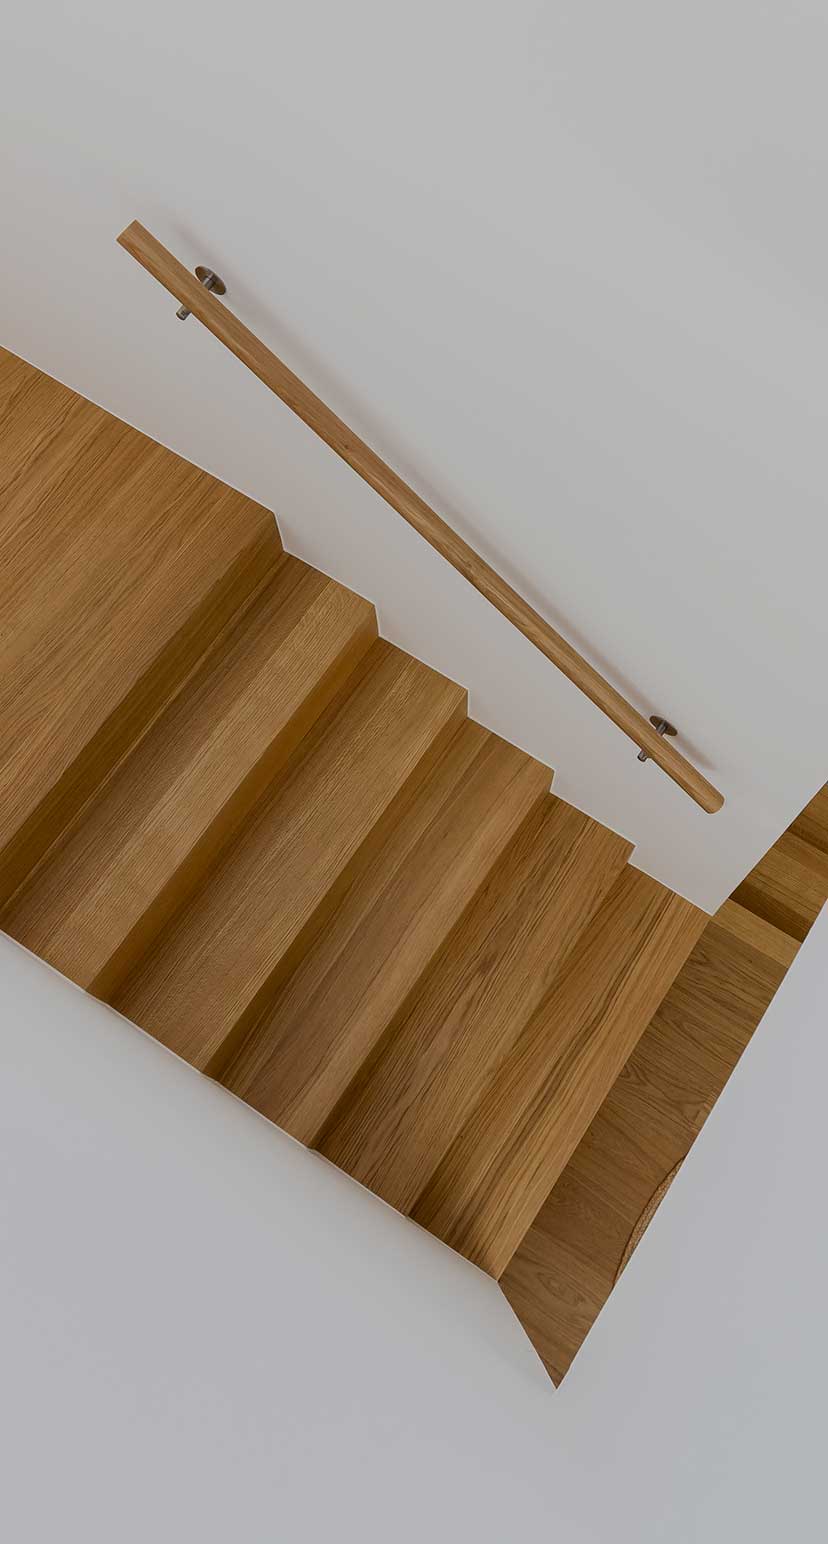 Treppenaufgang um die Ecke mit Handlauf aus Holz